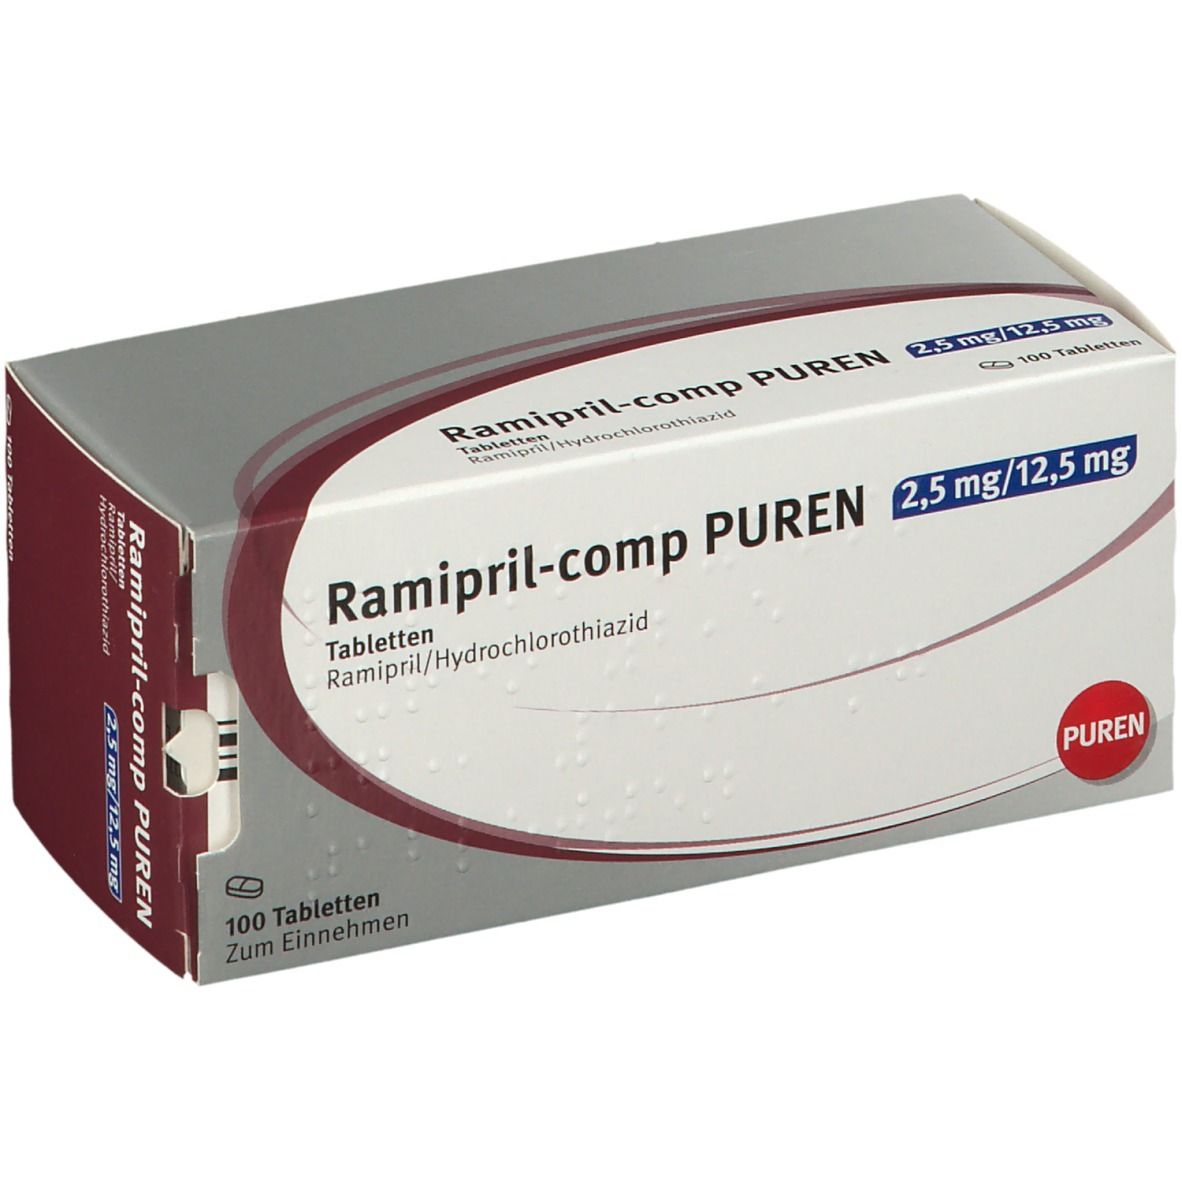 Ramipril-comp PUREN 2,5 mg/12,5 mg